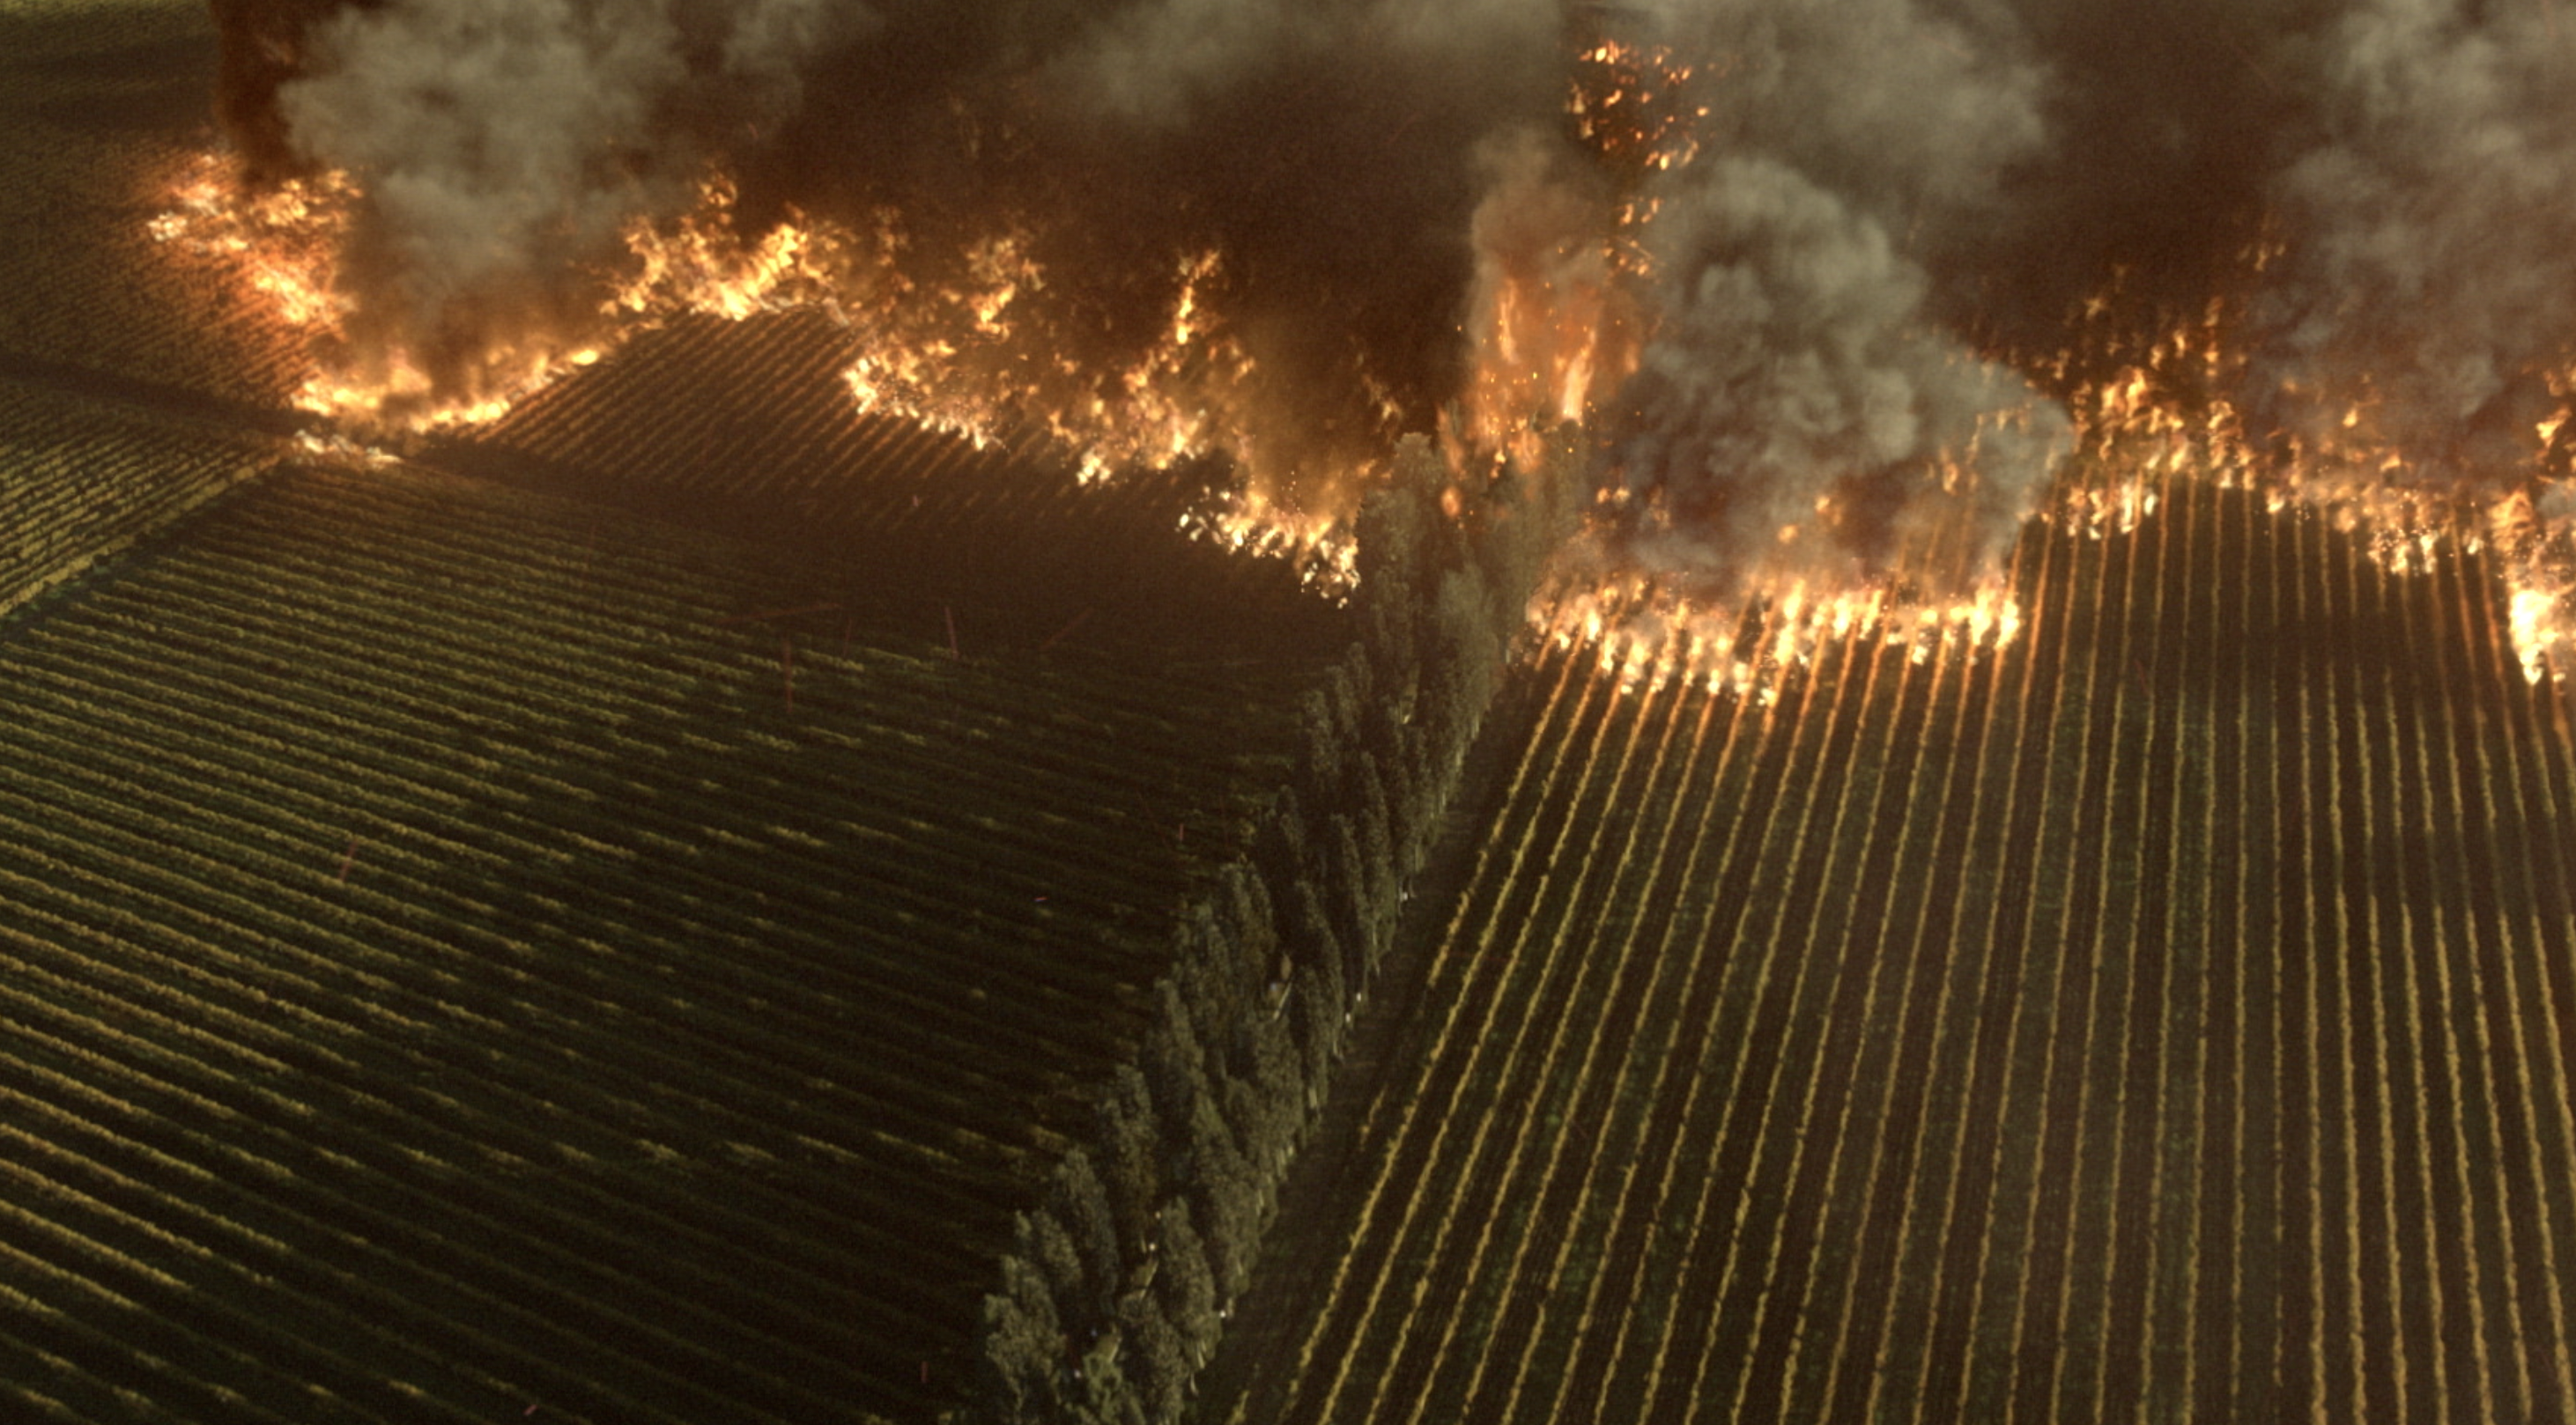 드라마 ‘빈센조’에서 이탈리아 마피아 조직원의 포도밭을 불태우는 장면은 현지 모습을 카메라로 담아 온 뒤 시각효과로 만들었다. 코로나19 상황에서 현지 촬영이 불가능한 장면들의 대안으로 VFX가 활용된 사례다. M83 제공